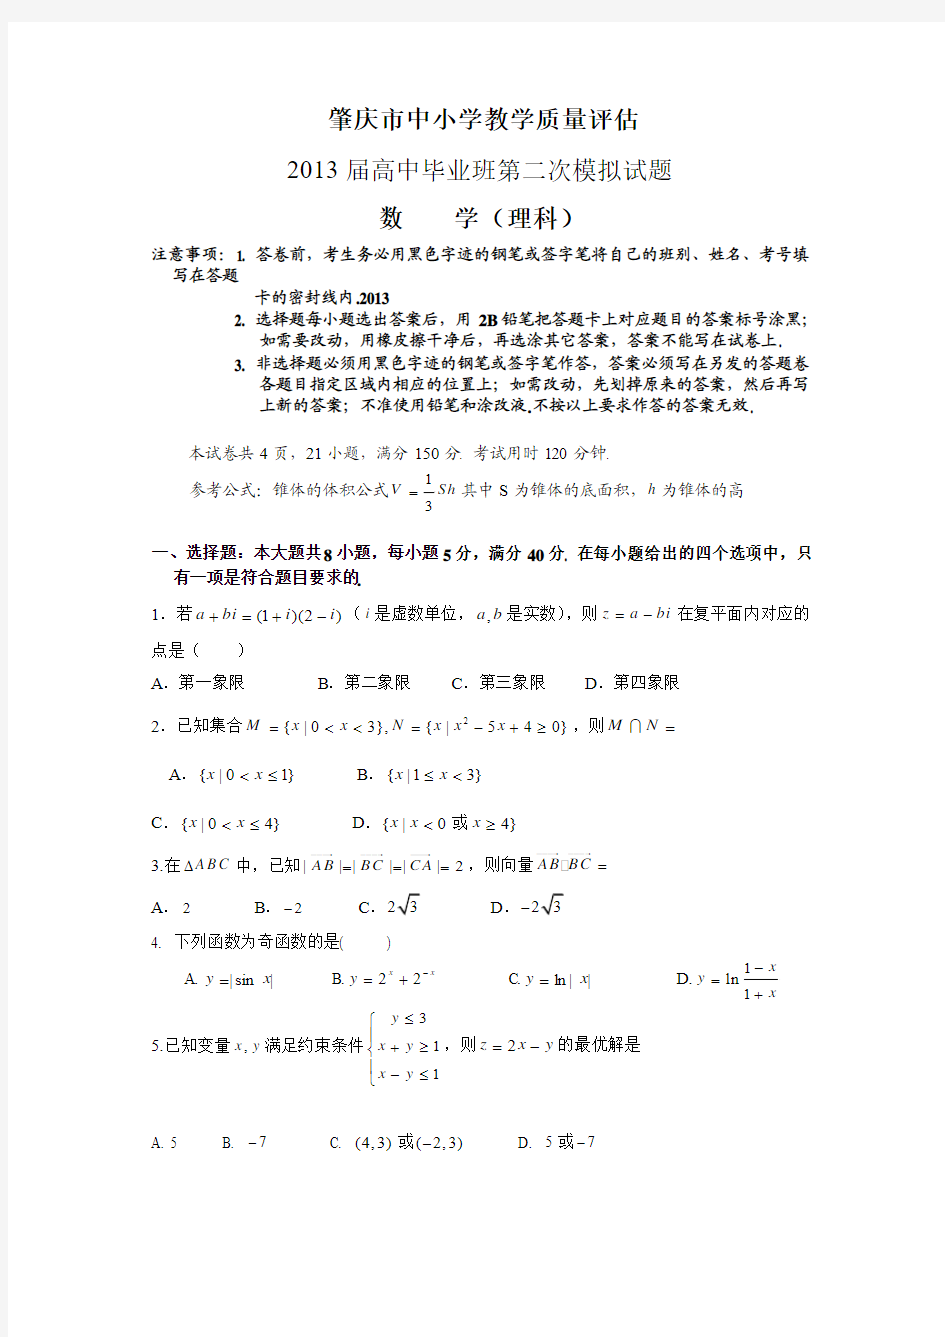 肇庆市中小学教学质量评估2013届高中毕业班第二次模拟数学(理科)试题与答案